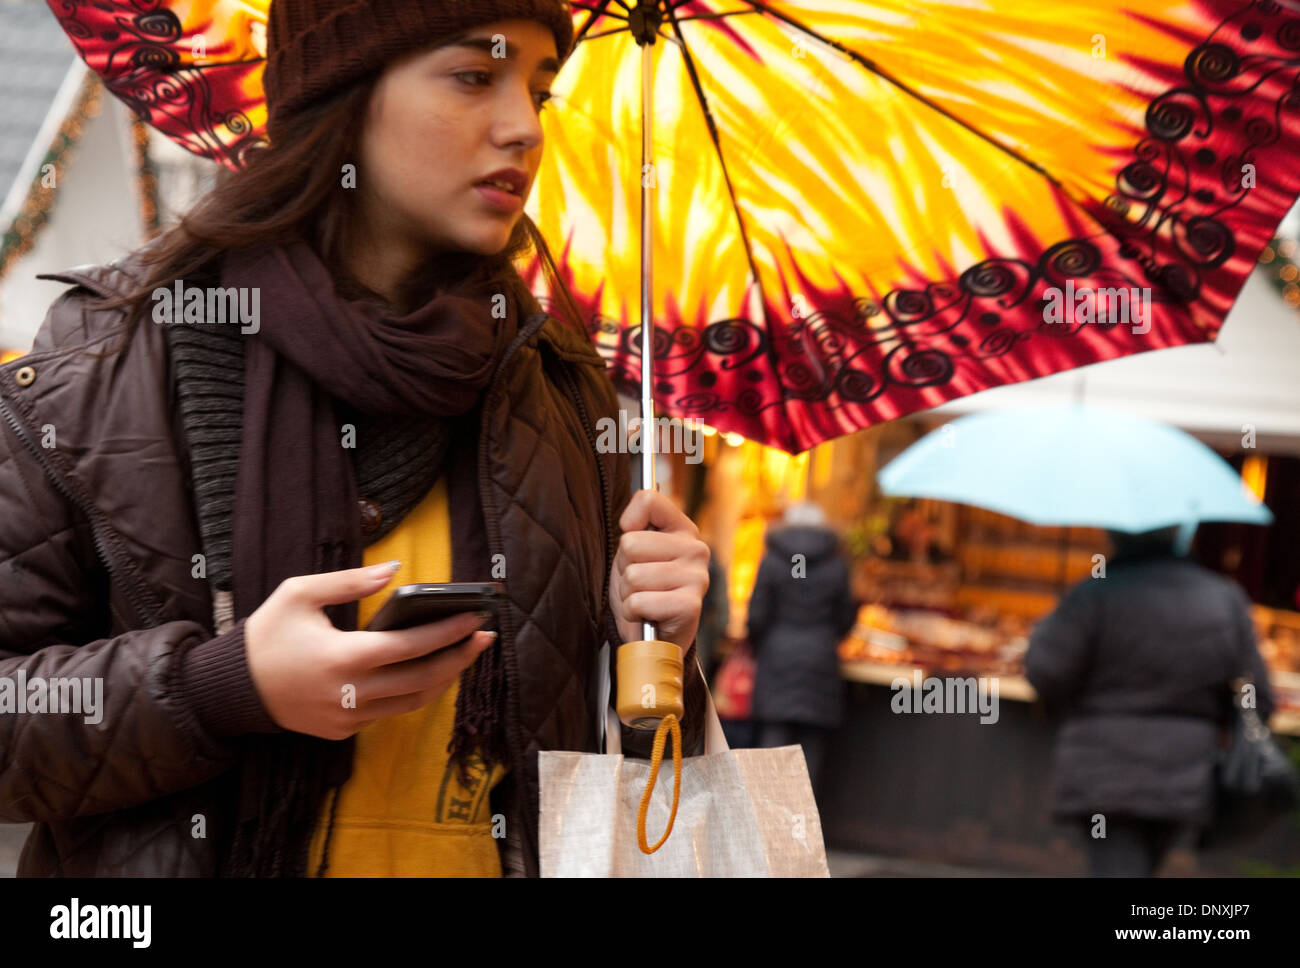 Ängstlich attraktive junge Frau in einem Ansturm, SMS auf ein Handy, und hält einen bunten Regenschirm, Köln, Deutschland, Europa Stockfoto